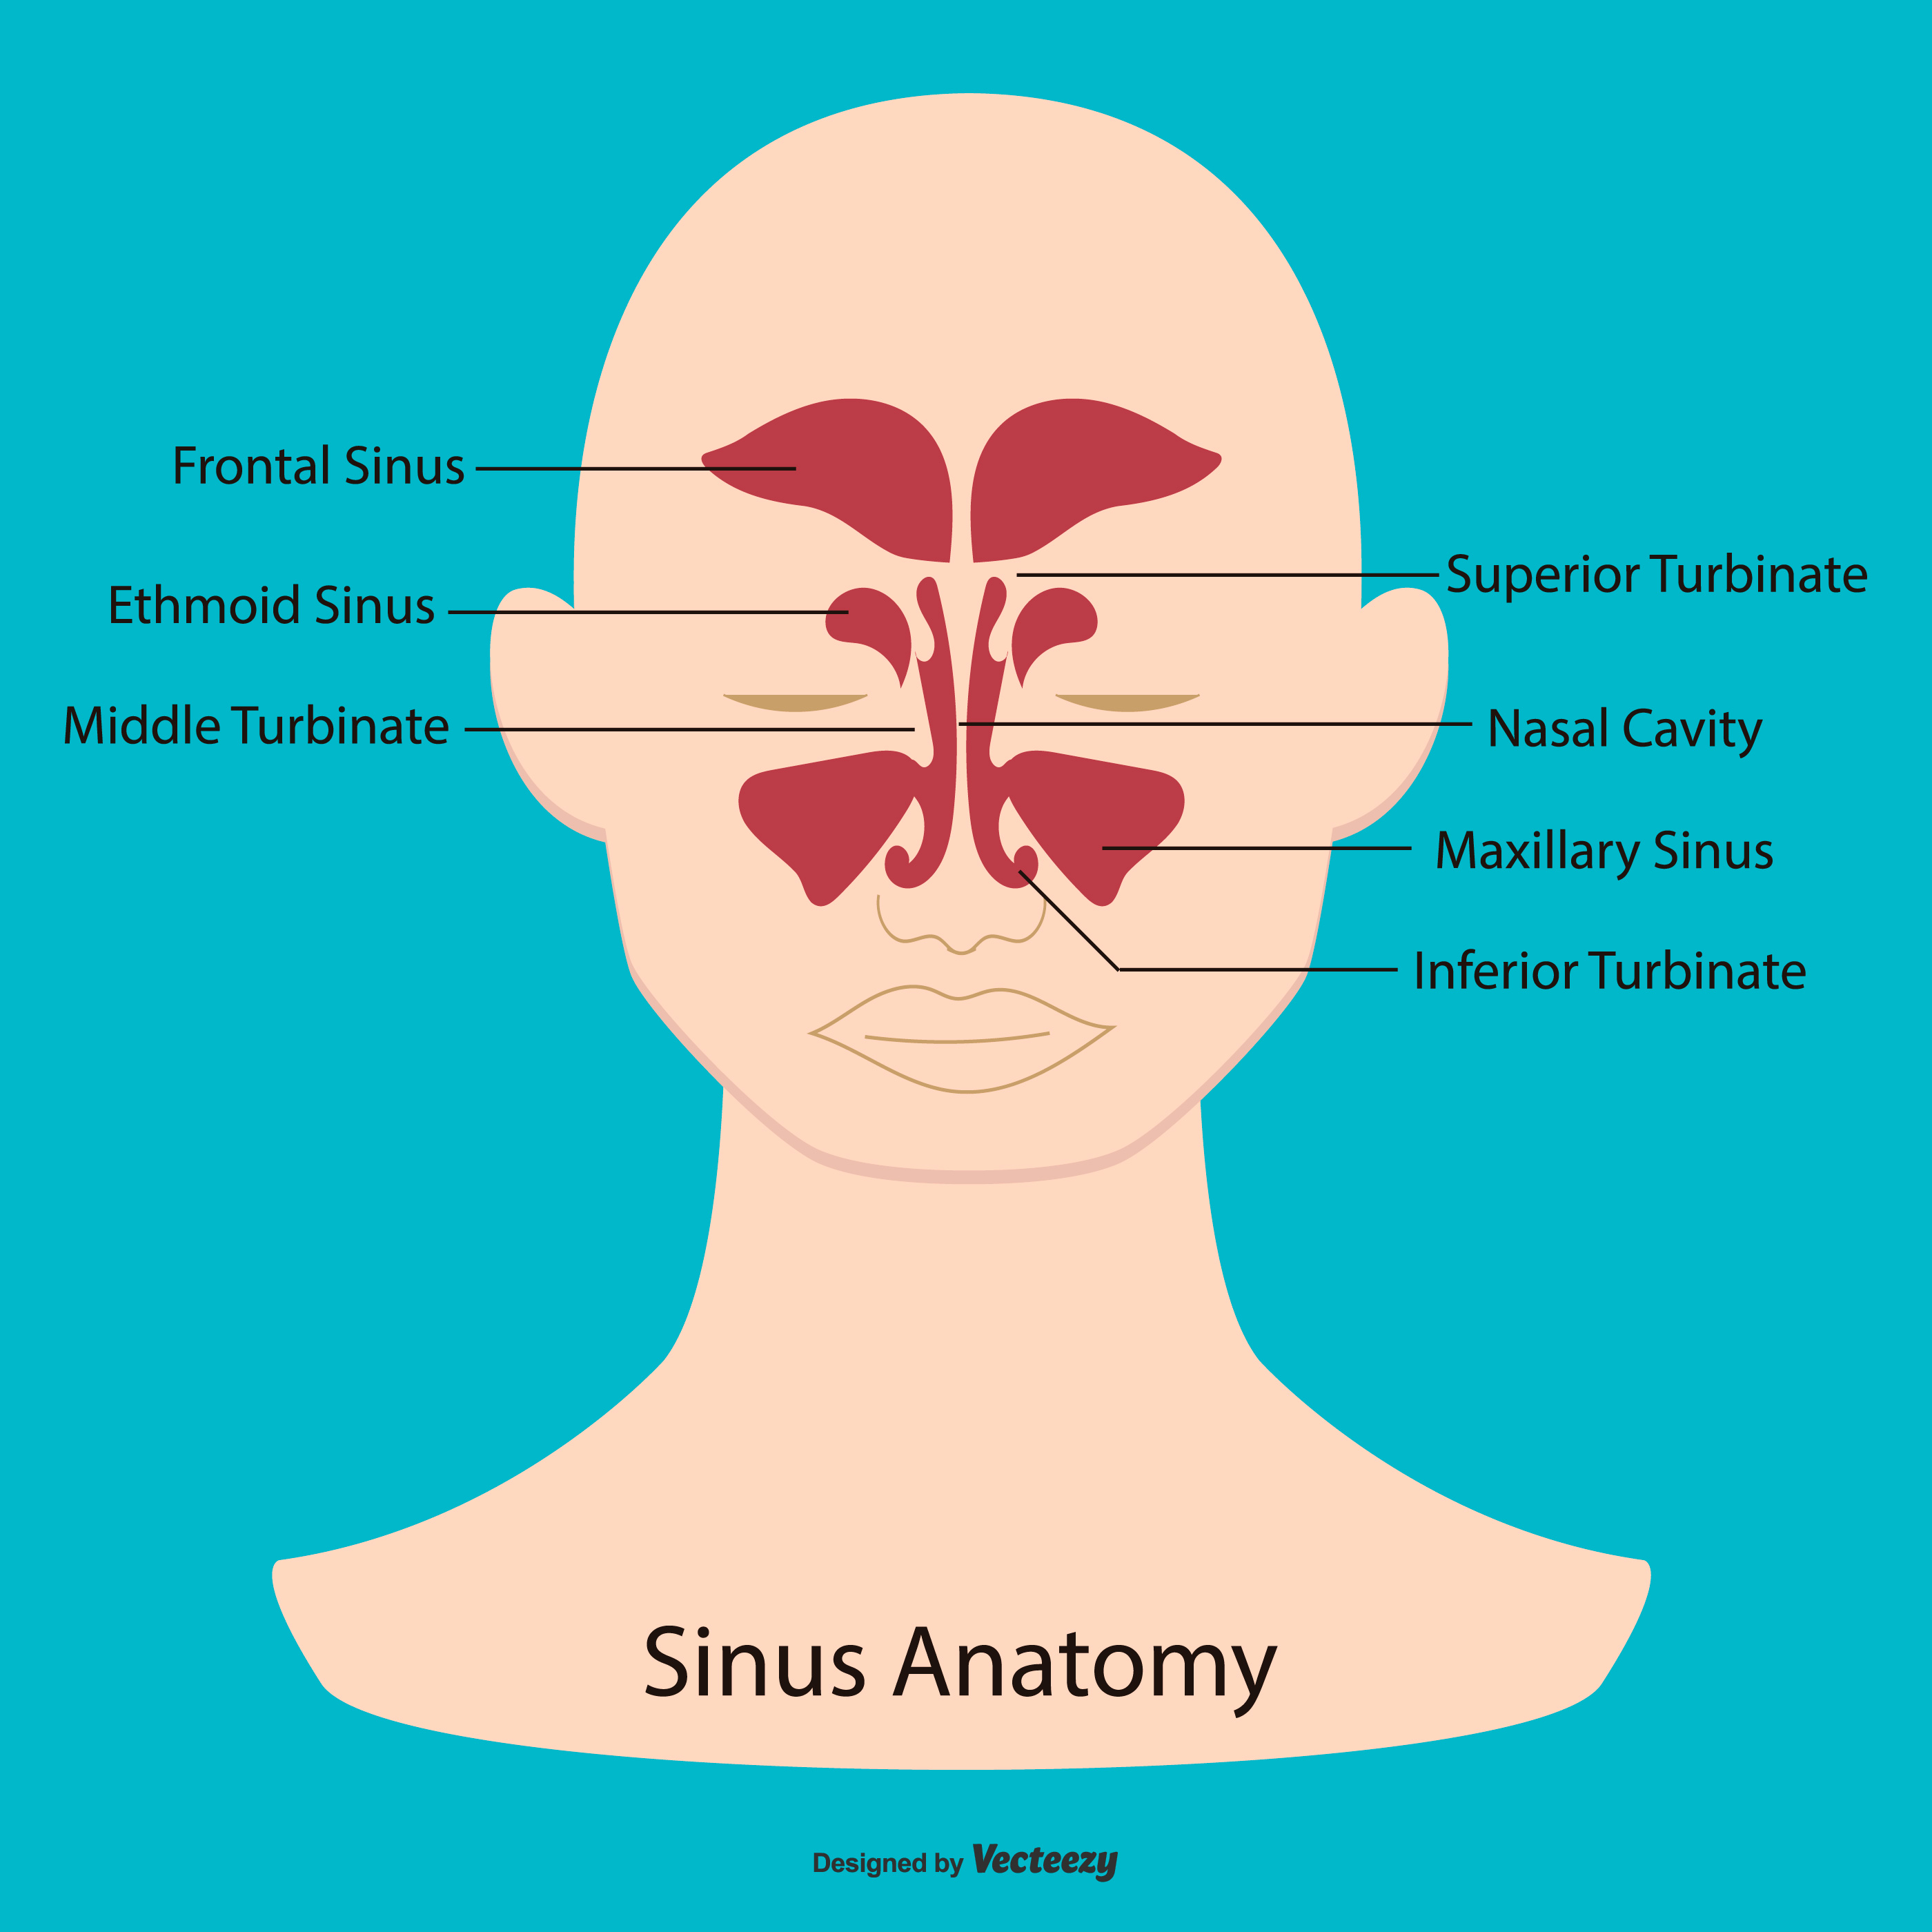 Sinus Anatomy Illustration 172412 Vector Art At Vecteezy